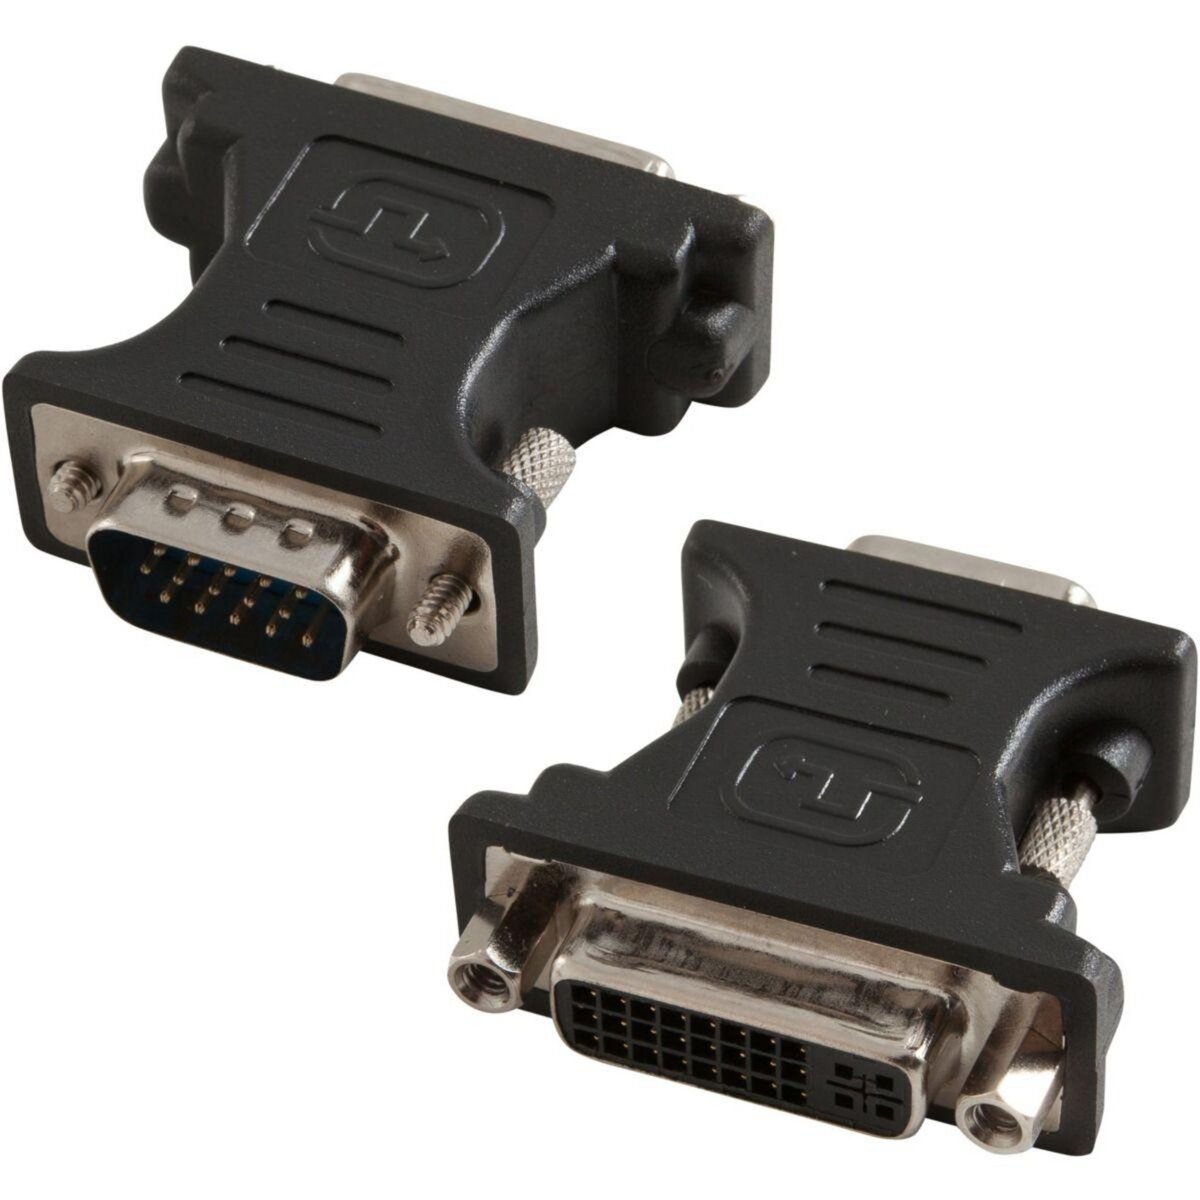 Adaptateur HDMI/VGA ESSENTIELB CONVERTISSEUR HDMI Male vers VGA Femelle